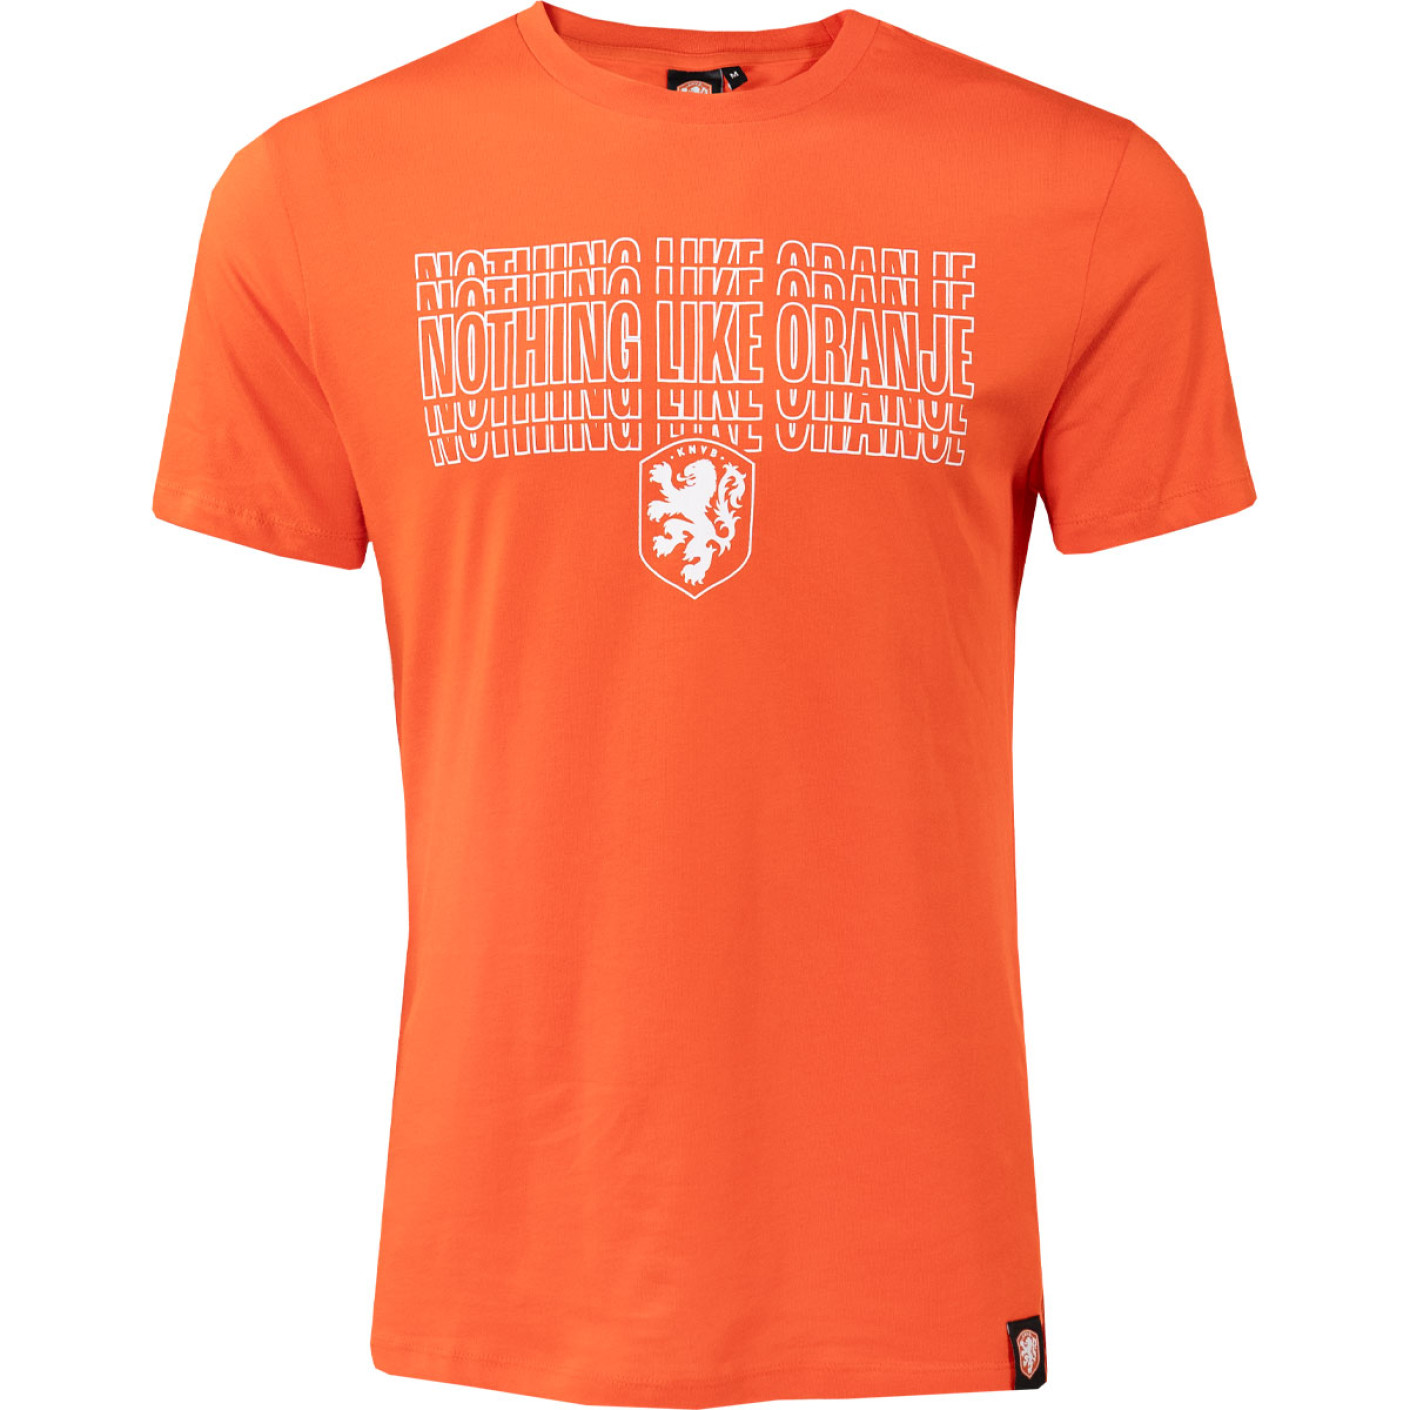 KNVB T-shirt Nothing Like Oranje Oranje